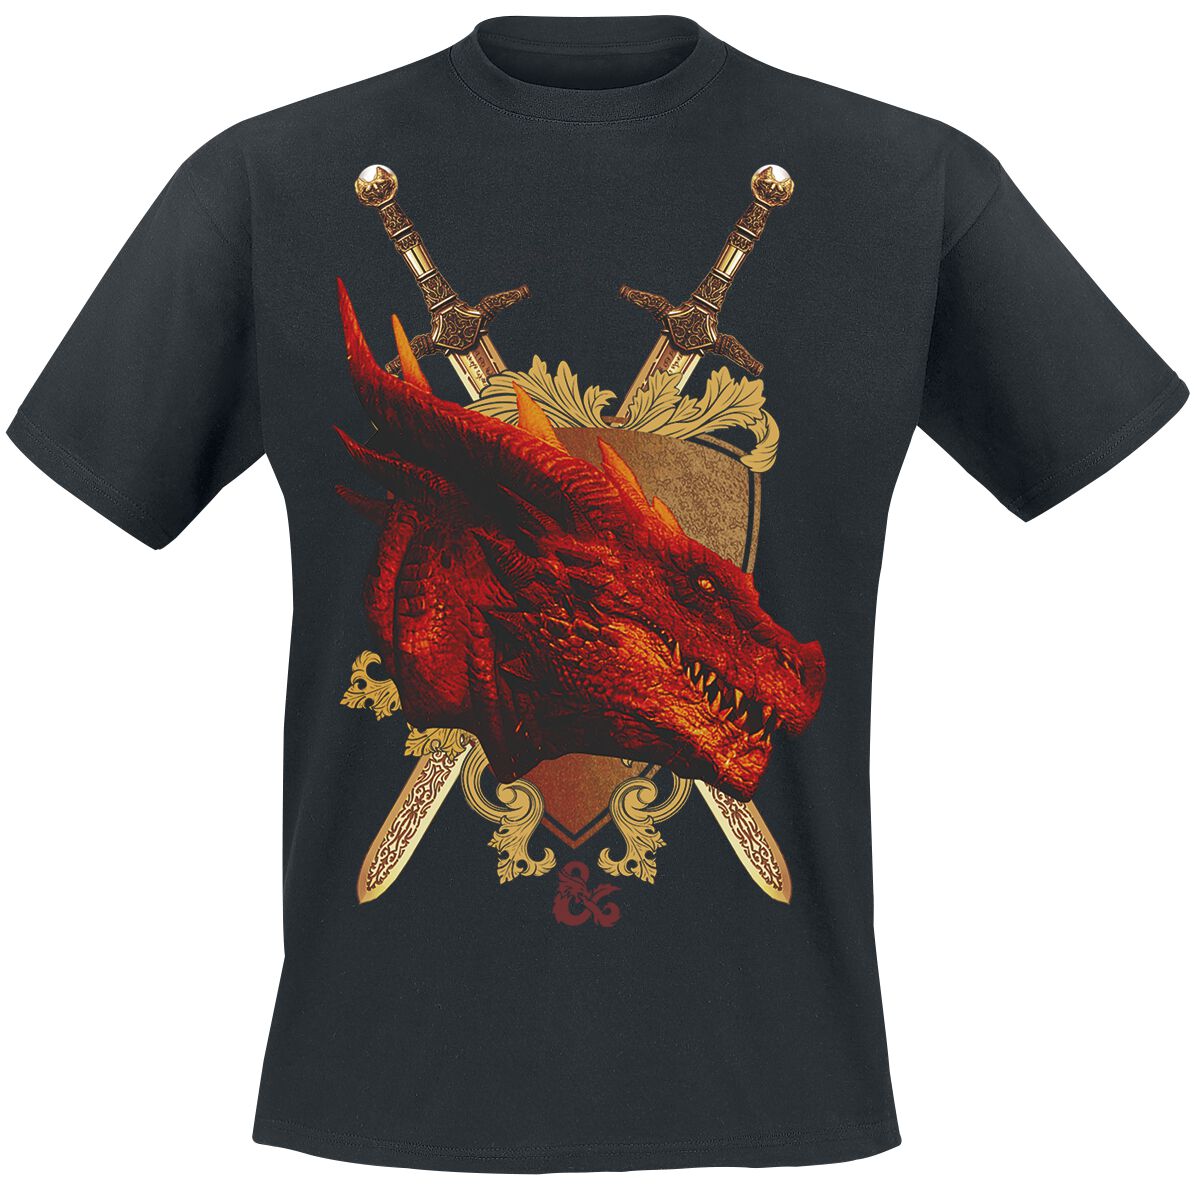 Dungeons and Dragons - Gaming T-Shirt - Honor Among Thieves - Shield - S bis XXL - für Männer - Größe S - schwarz  - EMP exklusives Merchandise!